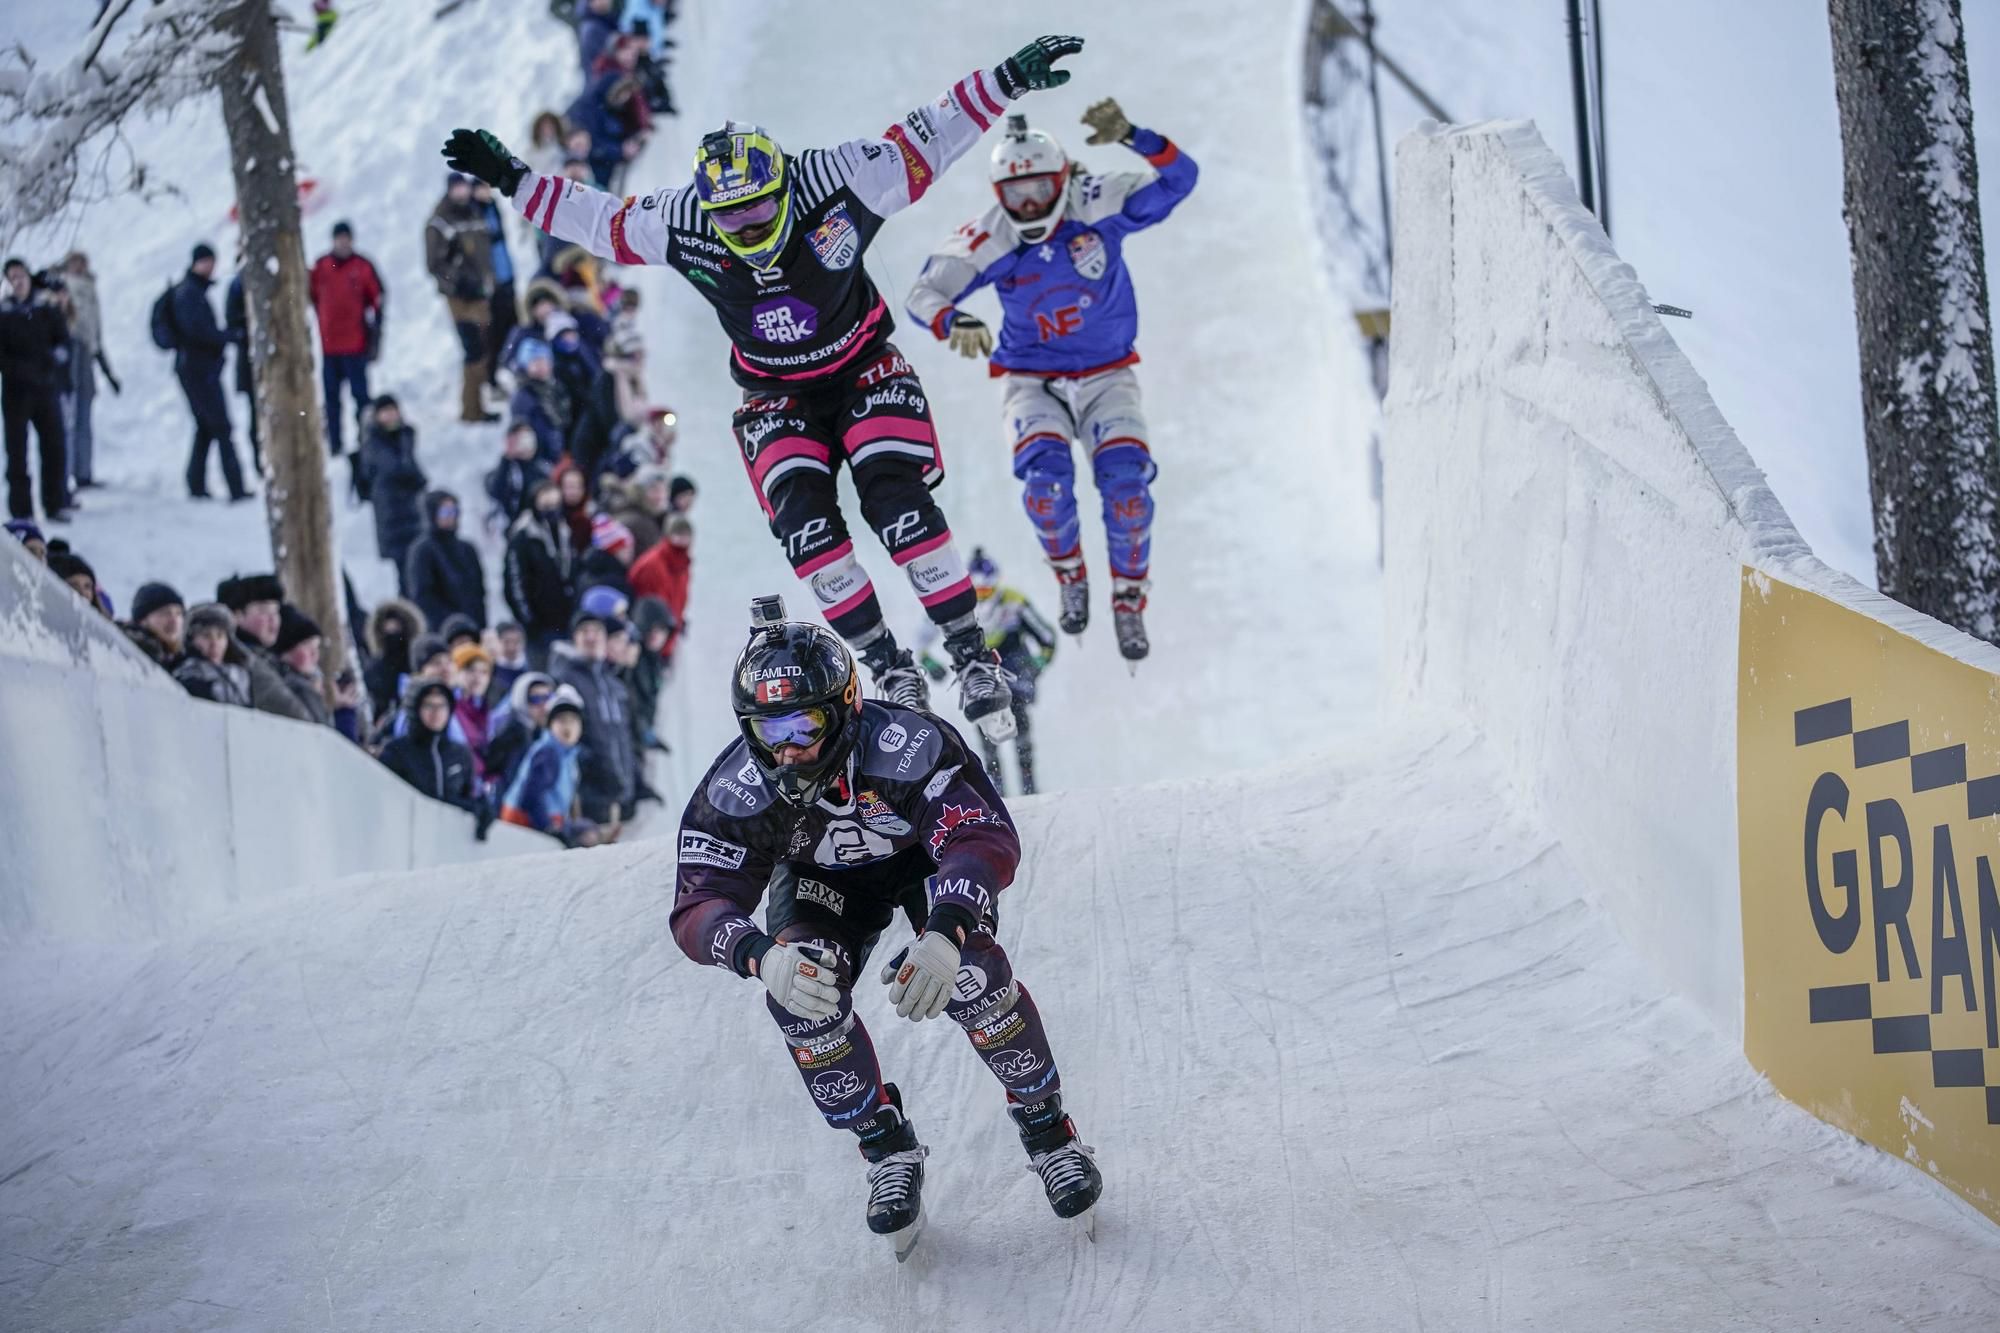 Red Bull Crashed ice Jyväskylä 2018.